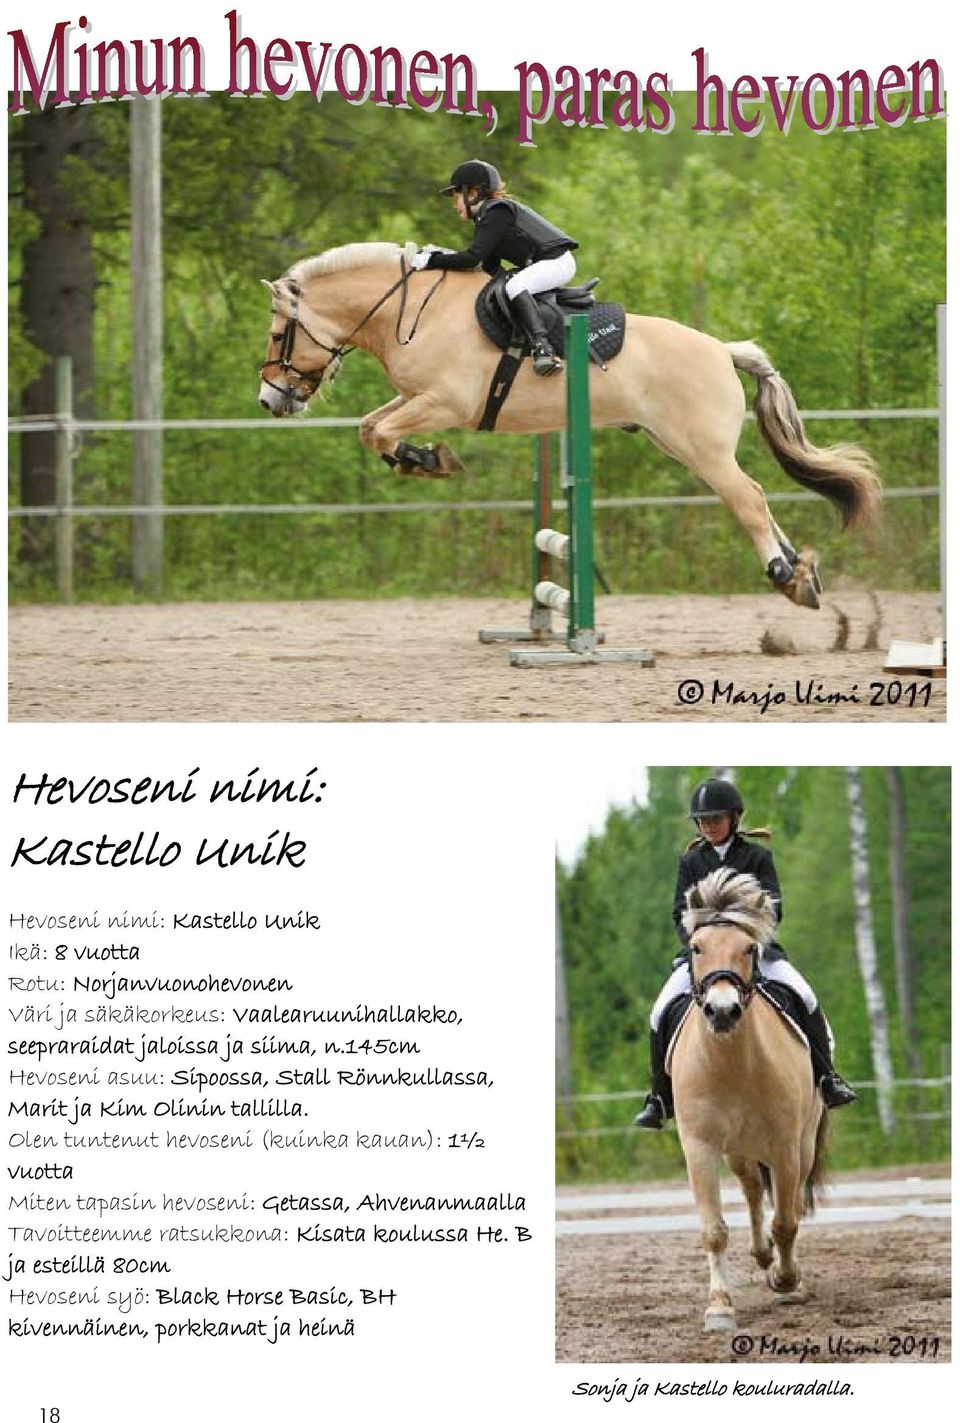 145cm Hevoseni asuu: Sipoossa, Stall Rönnkullassa, Marit ja Kim Olinin tallilla.